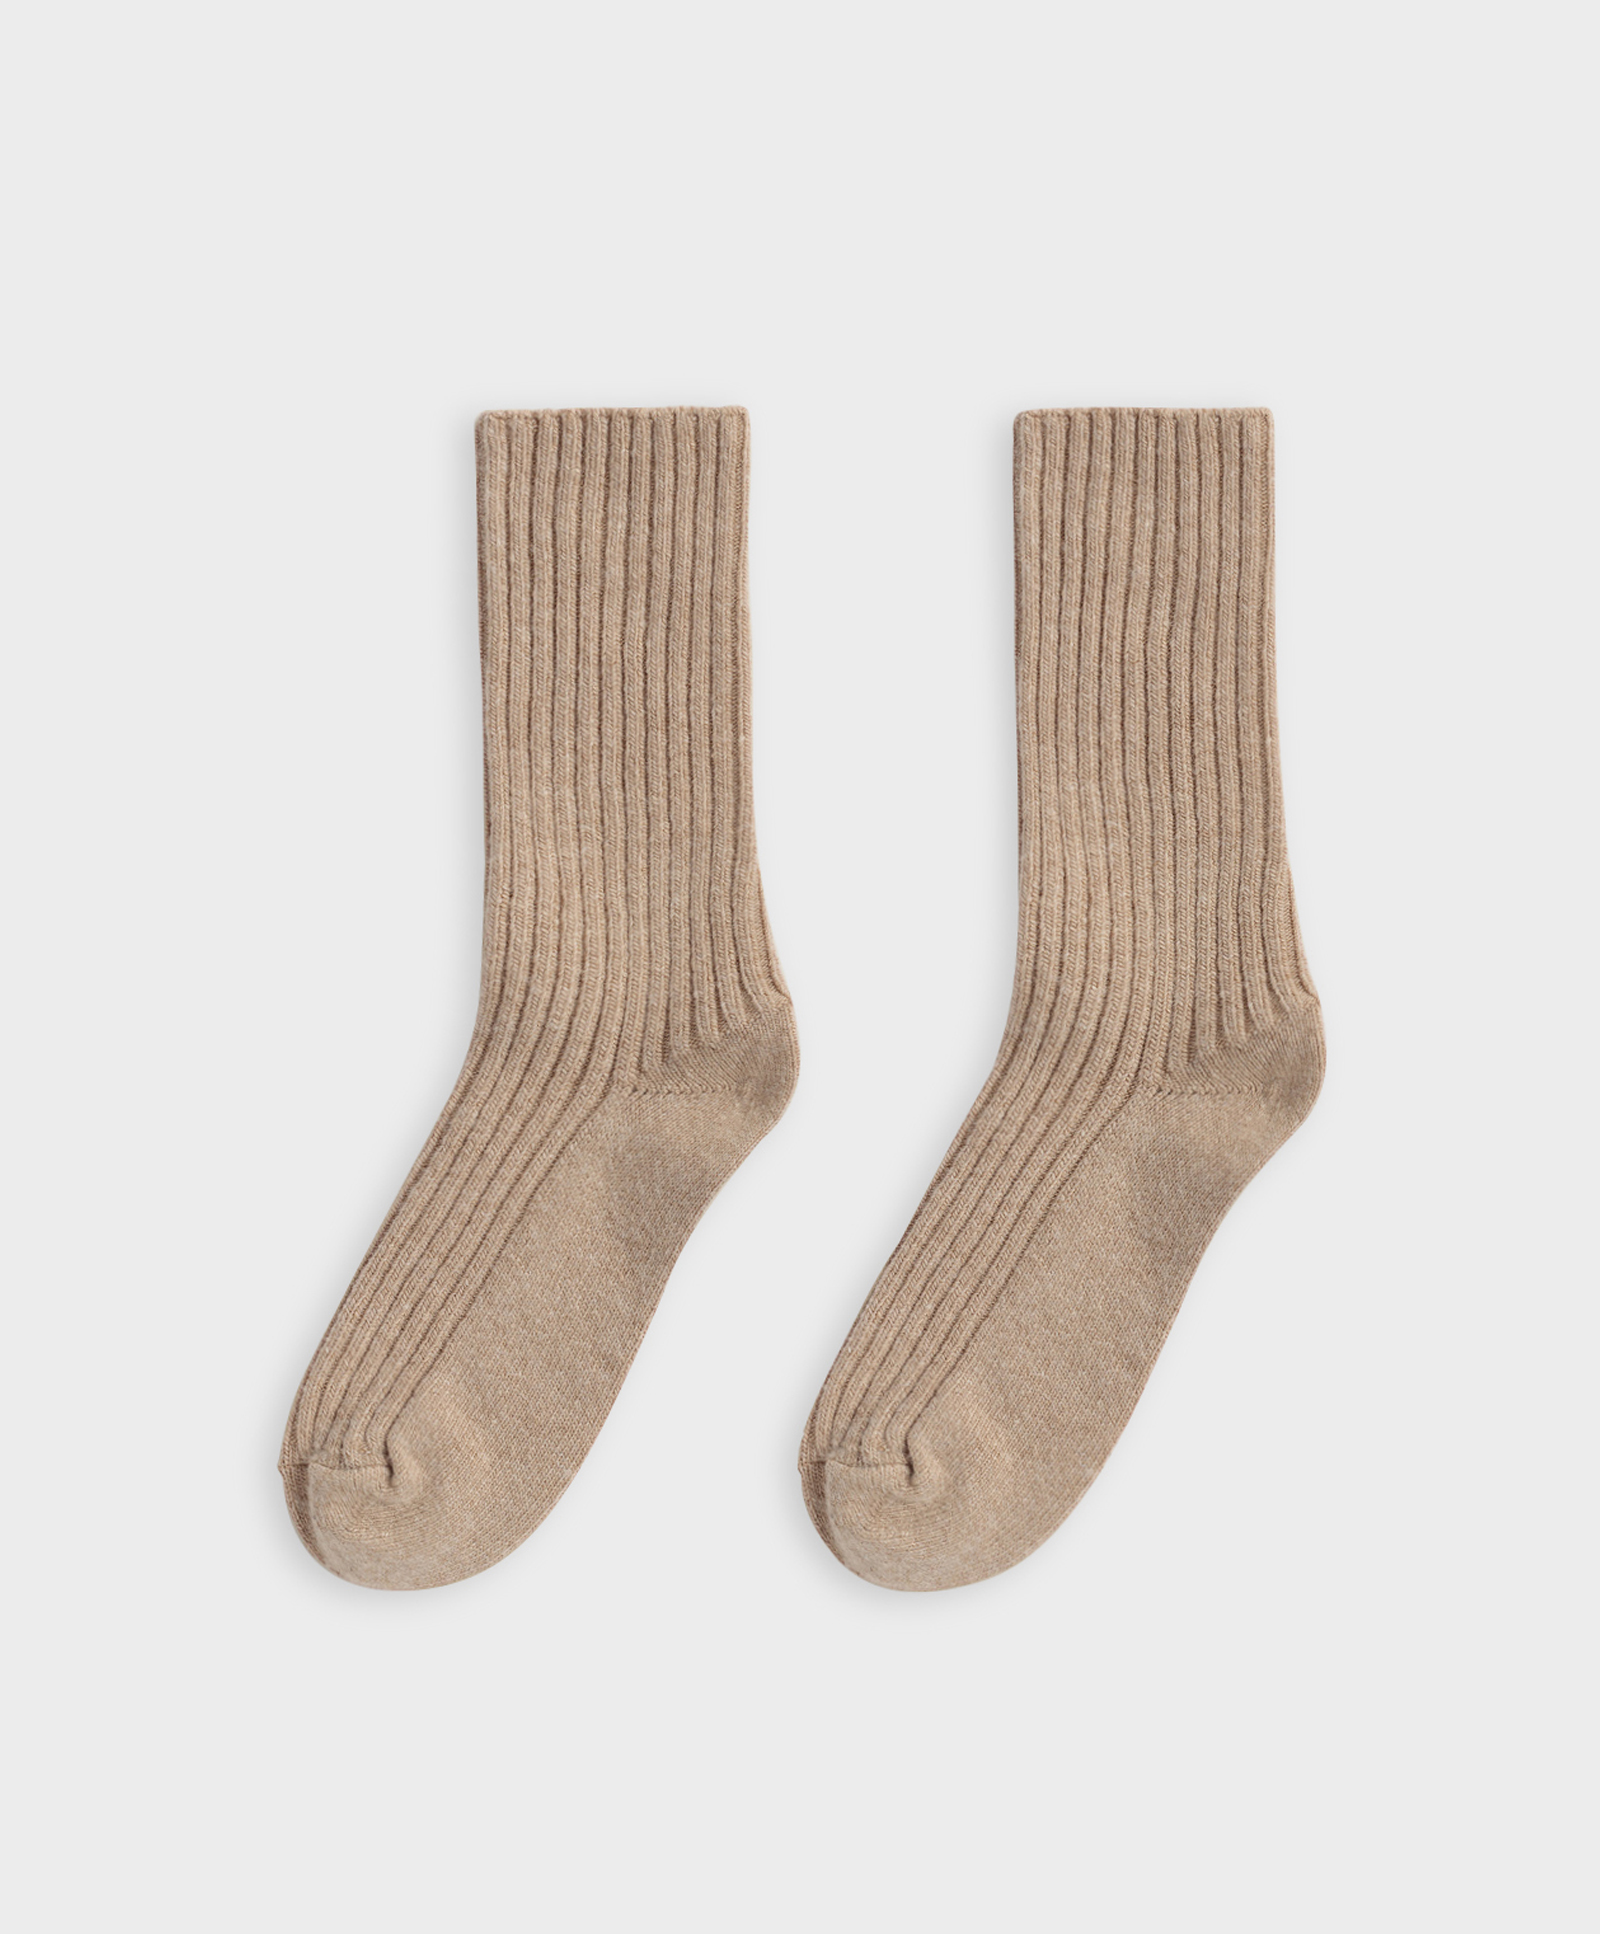 Gerippte mittellange Socken aus einem Wolle-Kaschmir-Mix